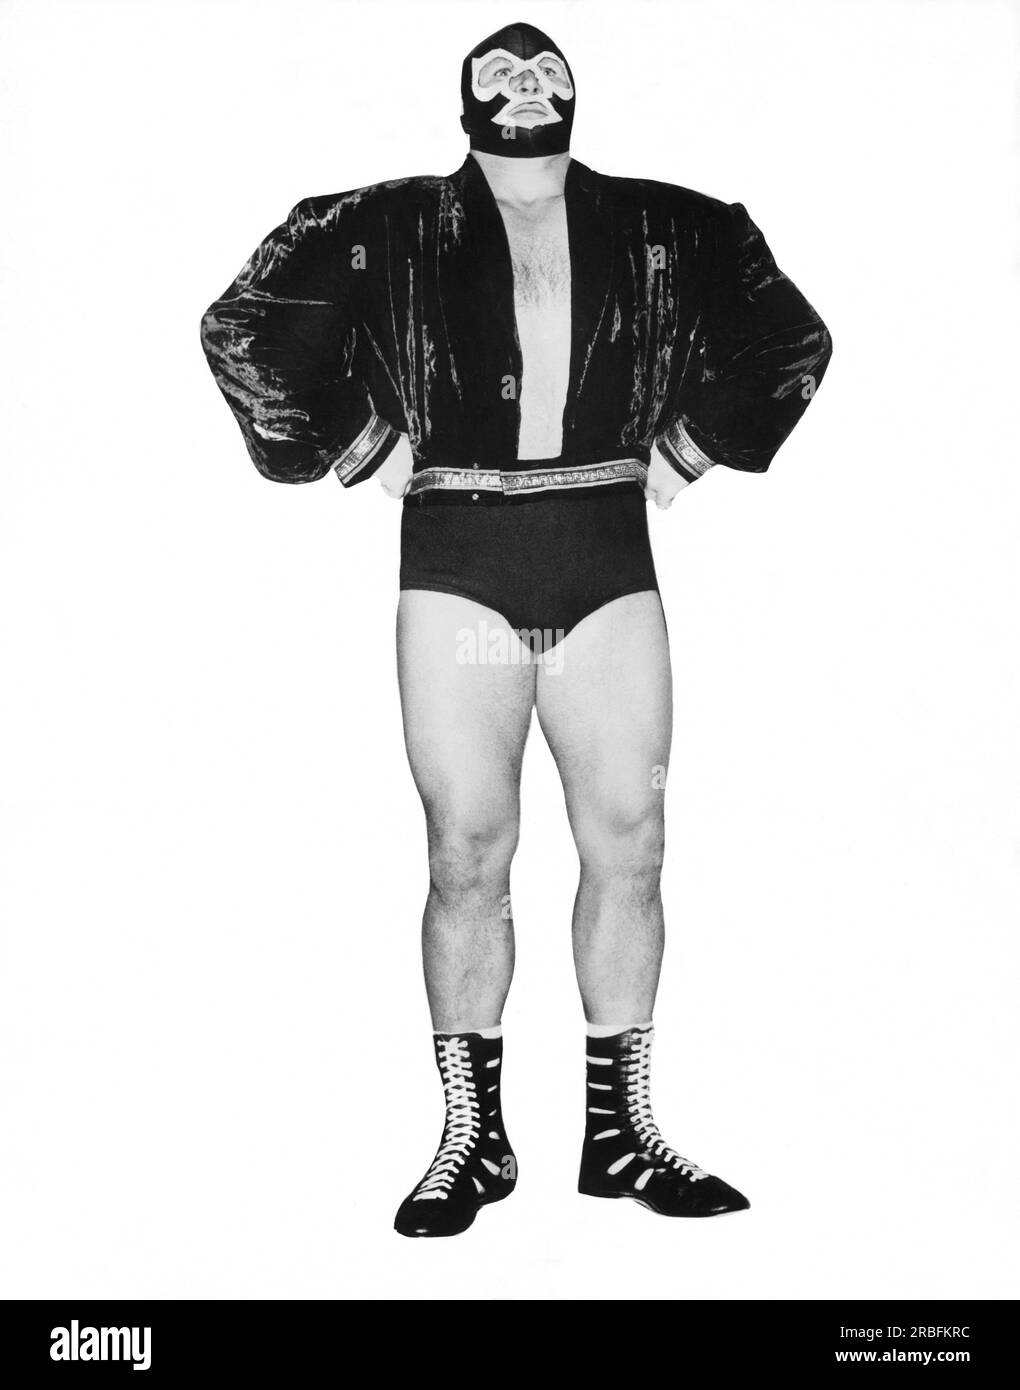 St. Paul, Minnesota: c. 1962 der erste maskierte Wrestler der American Wrestling Association, Big Bill Miller, der unter dem Namen "Mister M" aufgetreten ist. Stockfoto